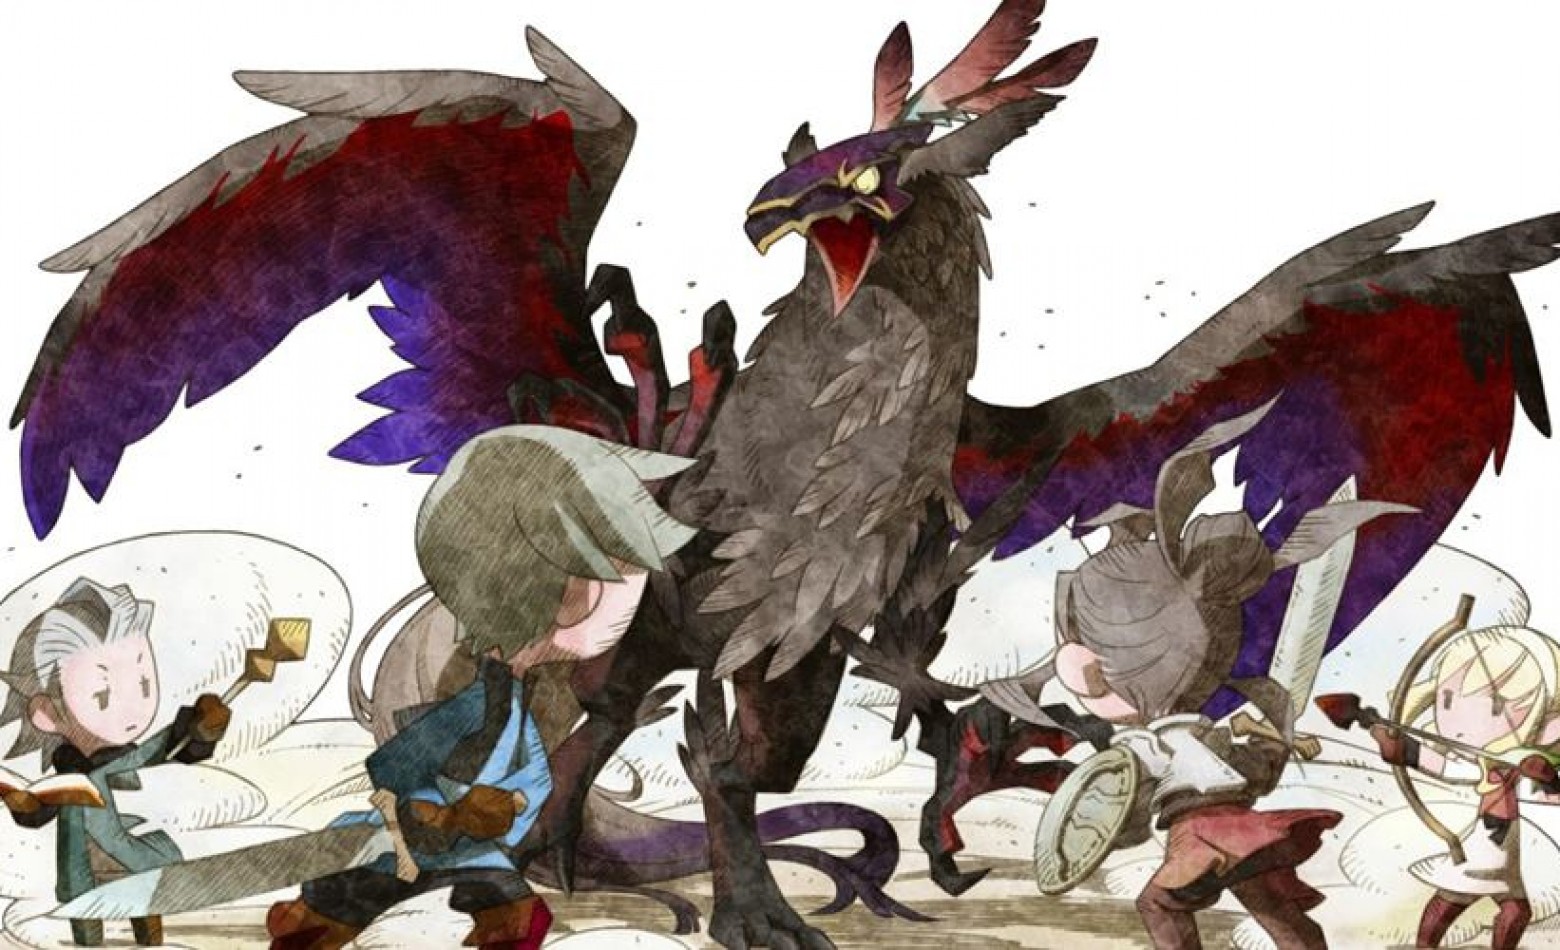 Final Fantasy Explorers chega em 18 de dezembro ao Japão